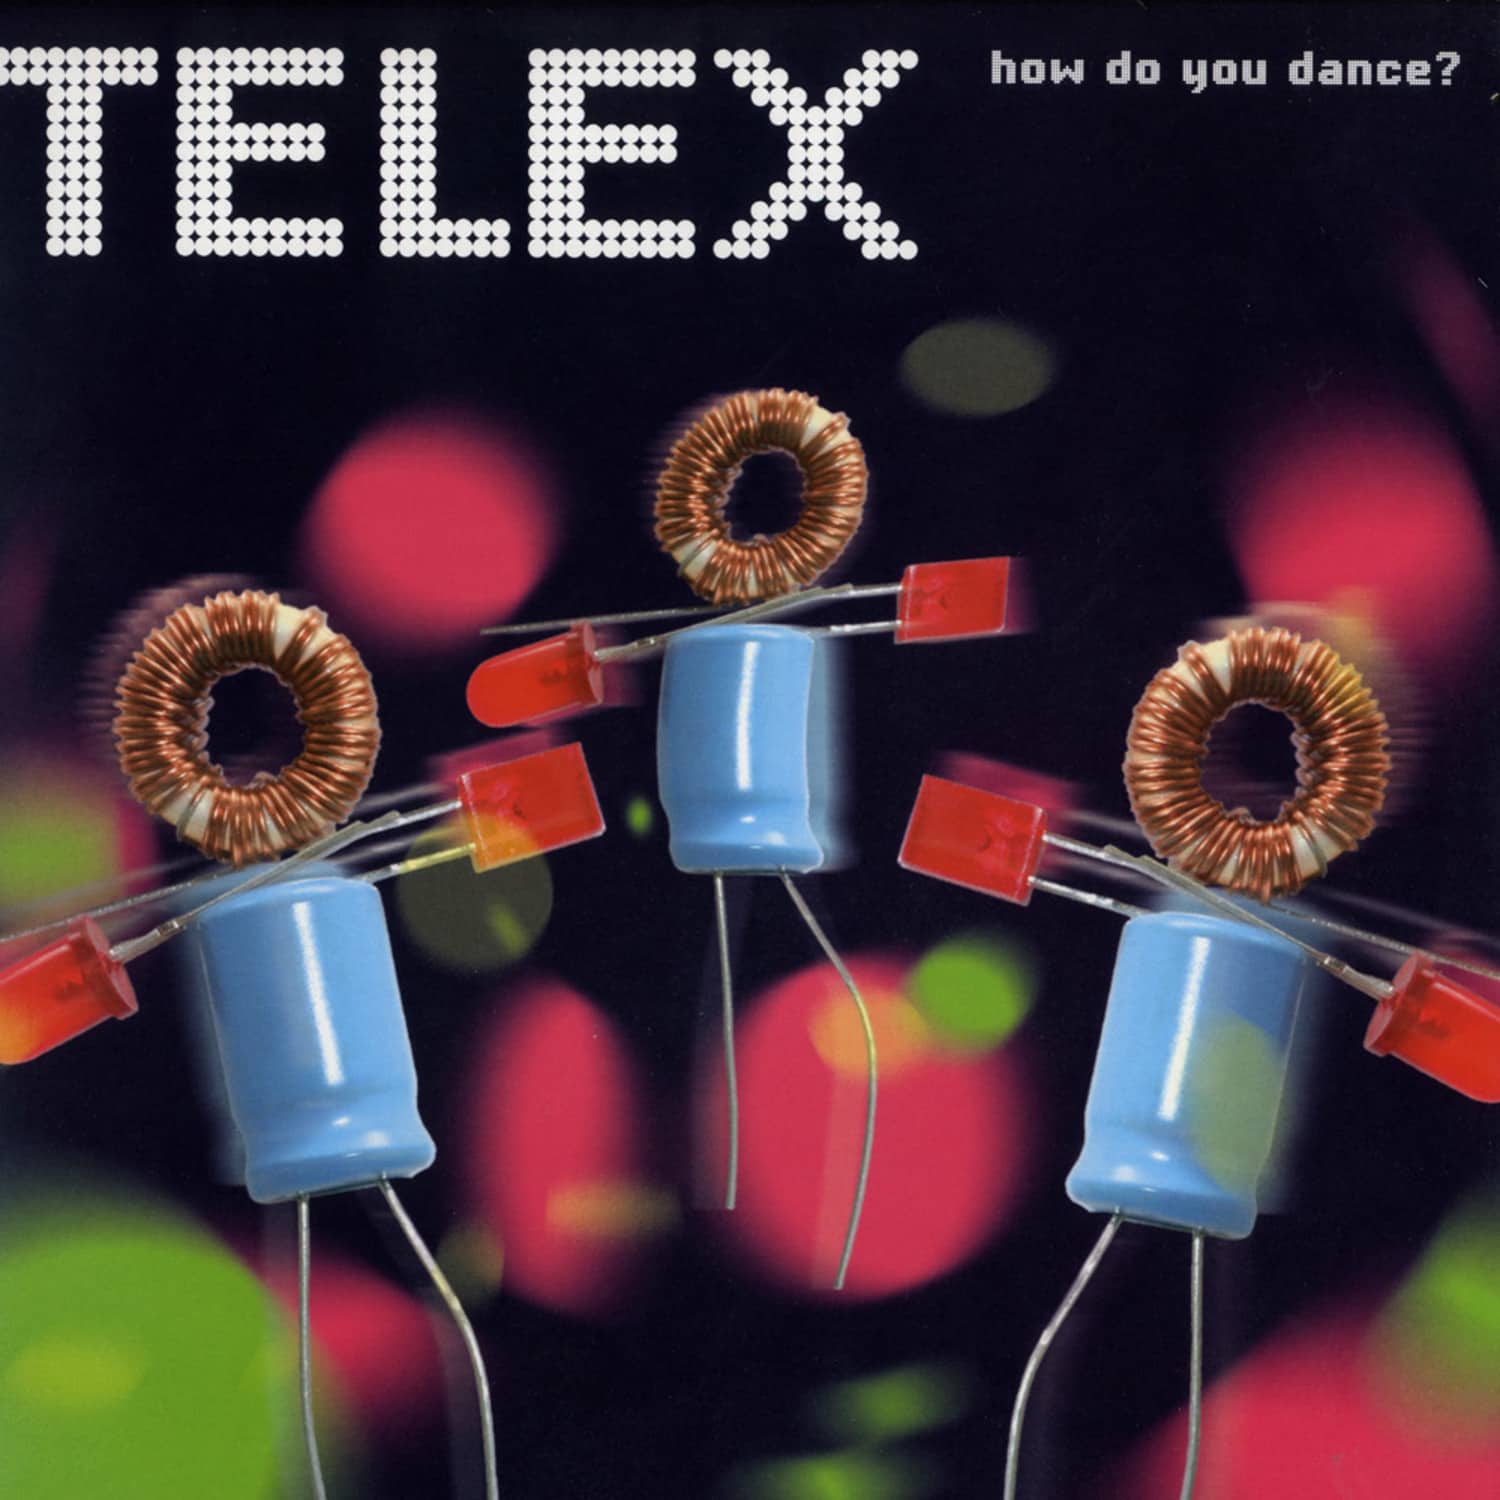 Telex - HOW DO YOU DANCE 